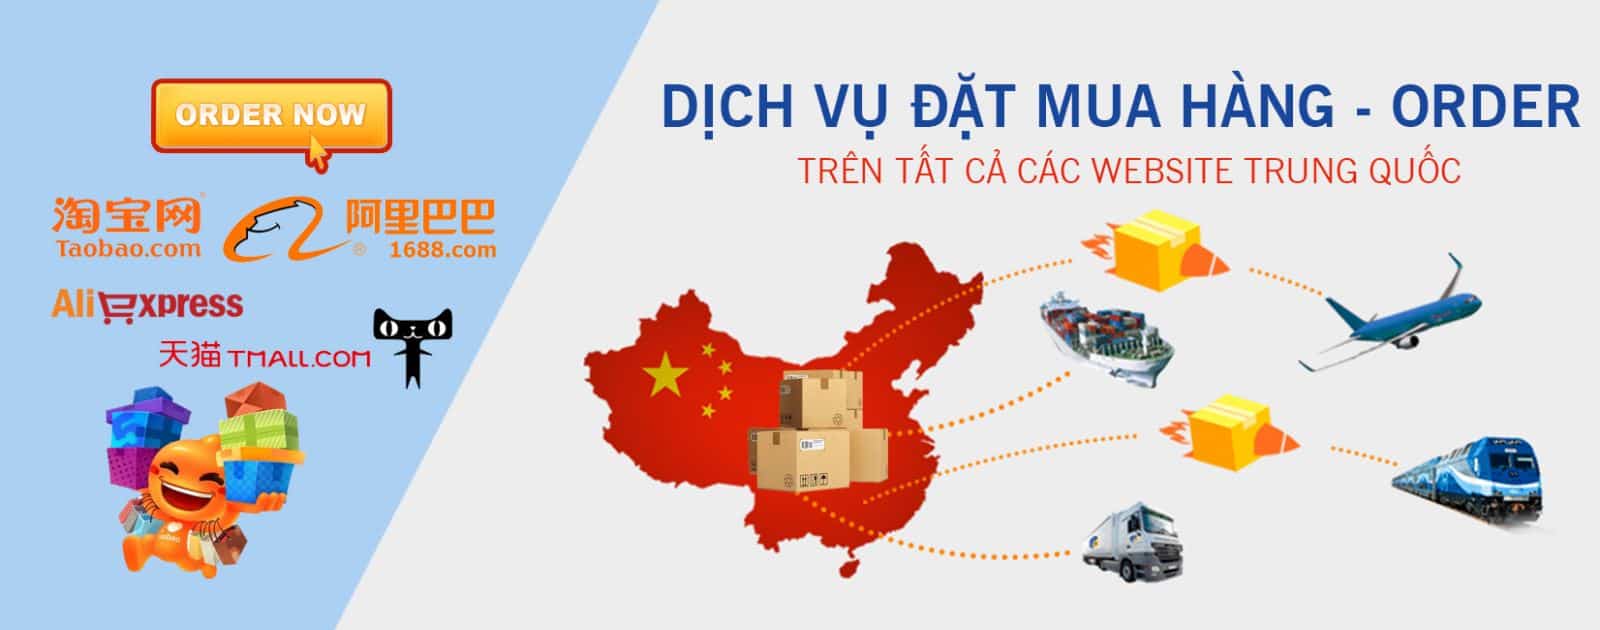 Sử dụng dịch vận chuyển hàng Trung Quốc về Đà Nẵng để tối ưu việc nhập hàng